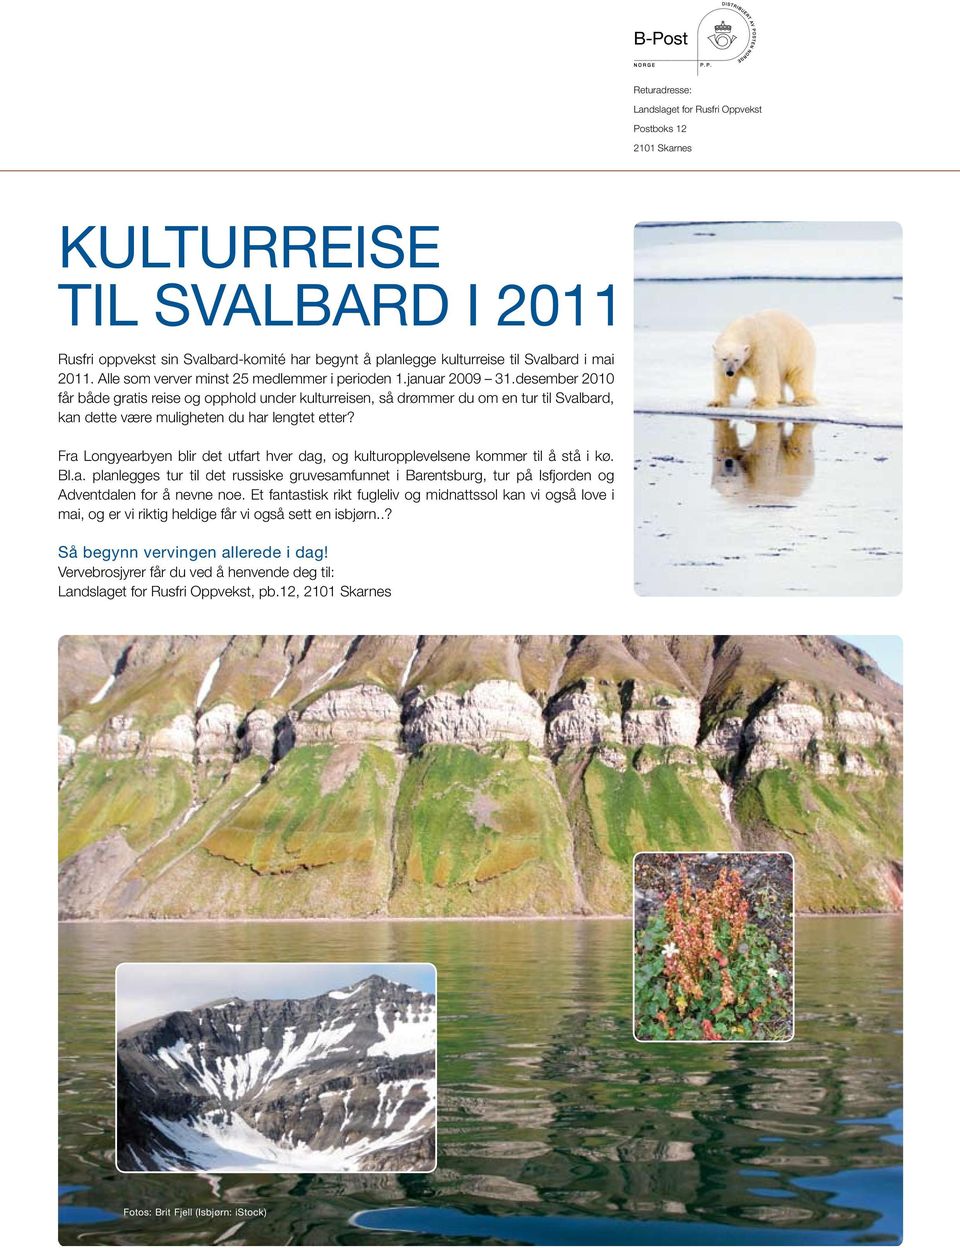 desember 2010 får både gratis reise og opphold under kulturreisen, så drømmer du om en tur til Svalbard, kan dette være muligheten du har lengtet etter?